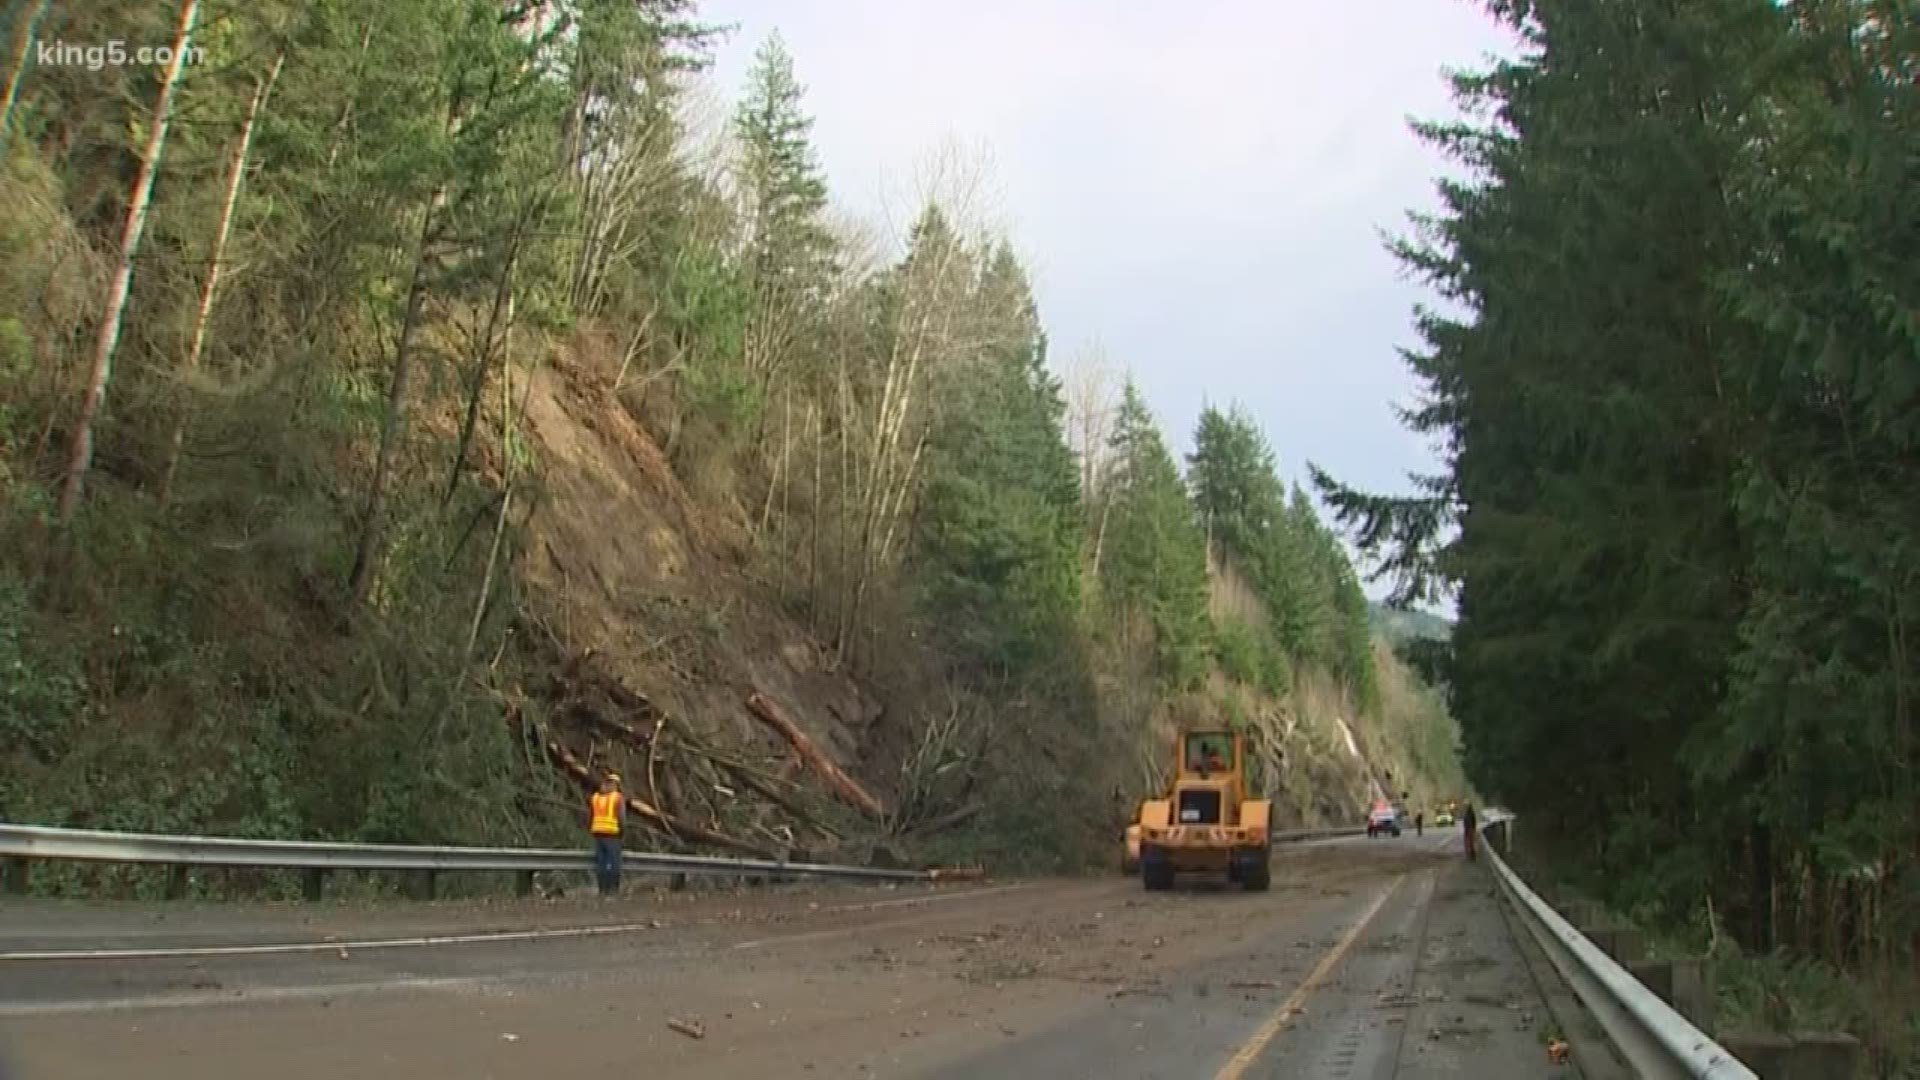 NB I5 reopens hours after landslide blocks highway near Bellingham